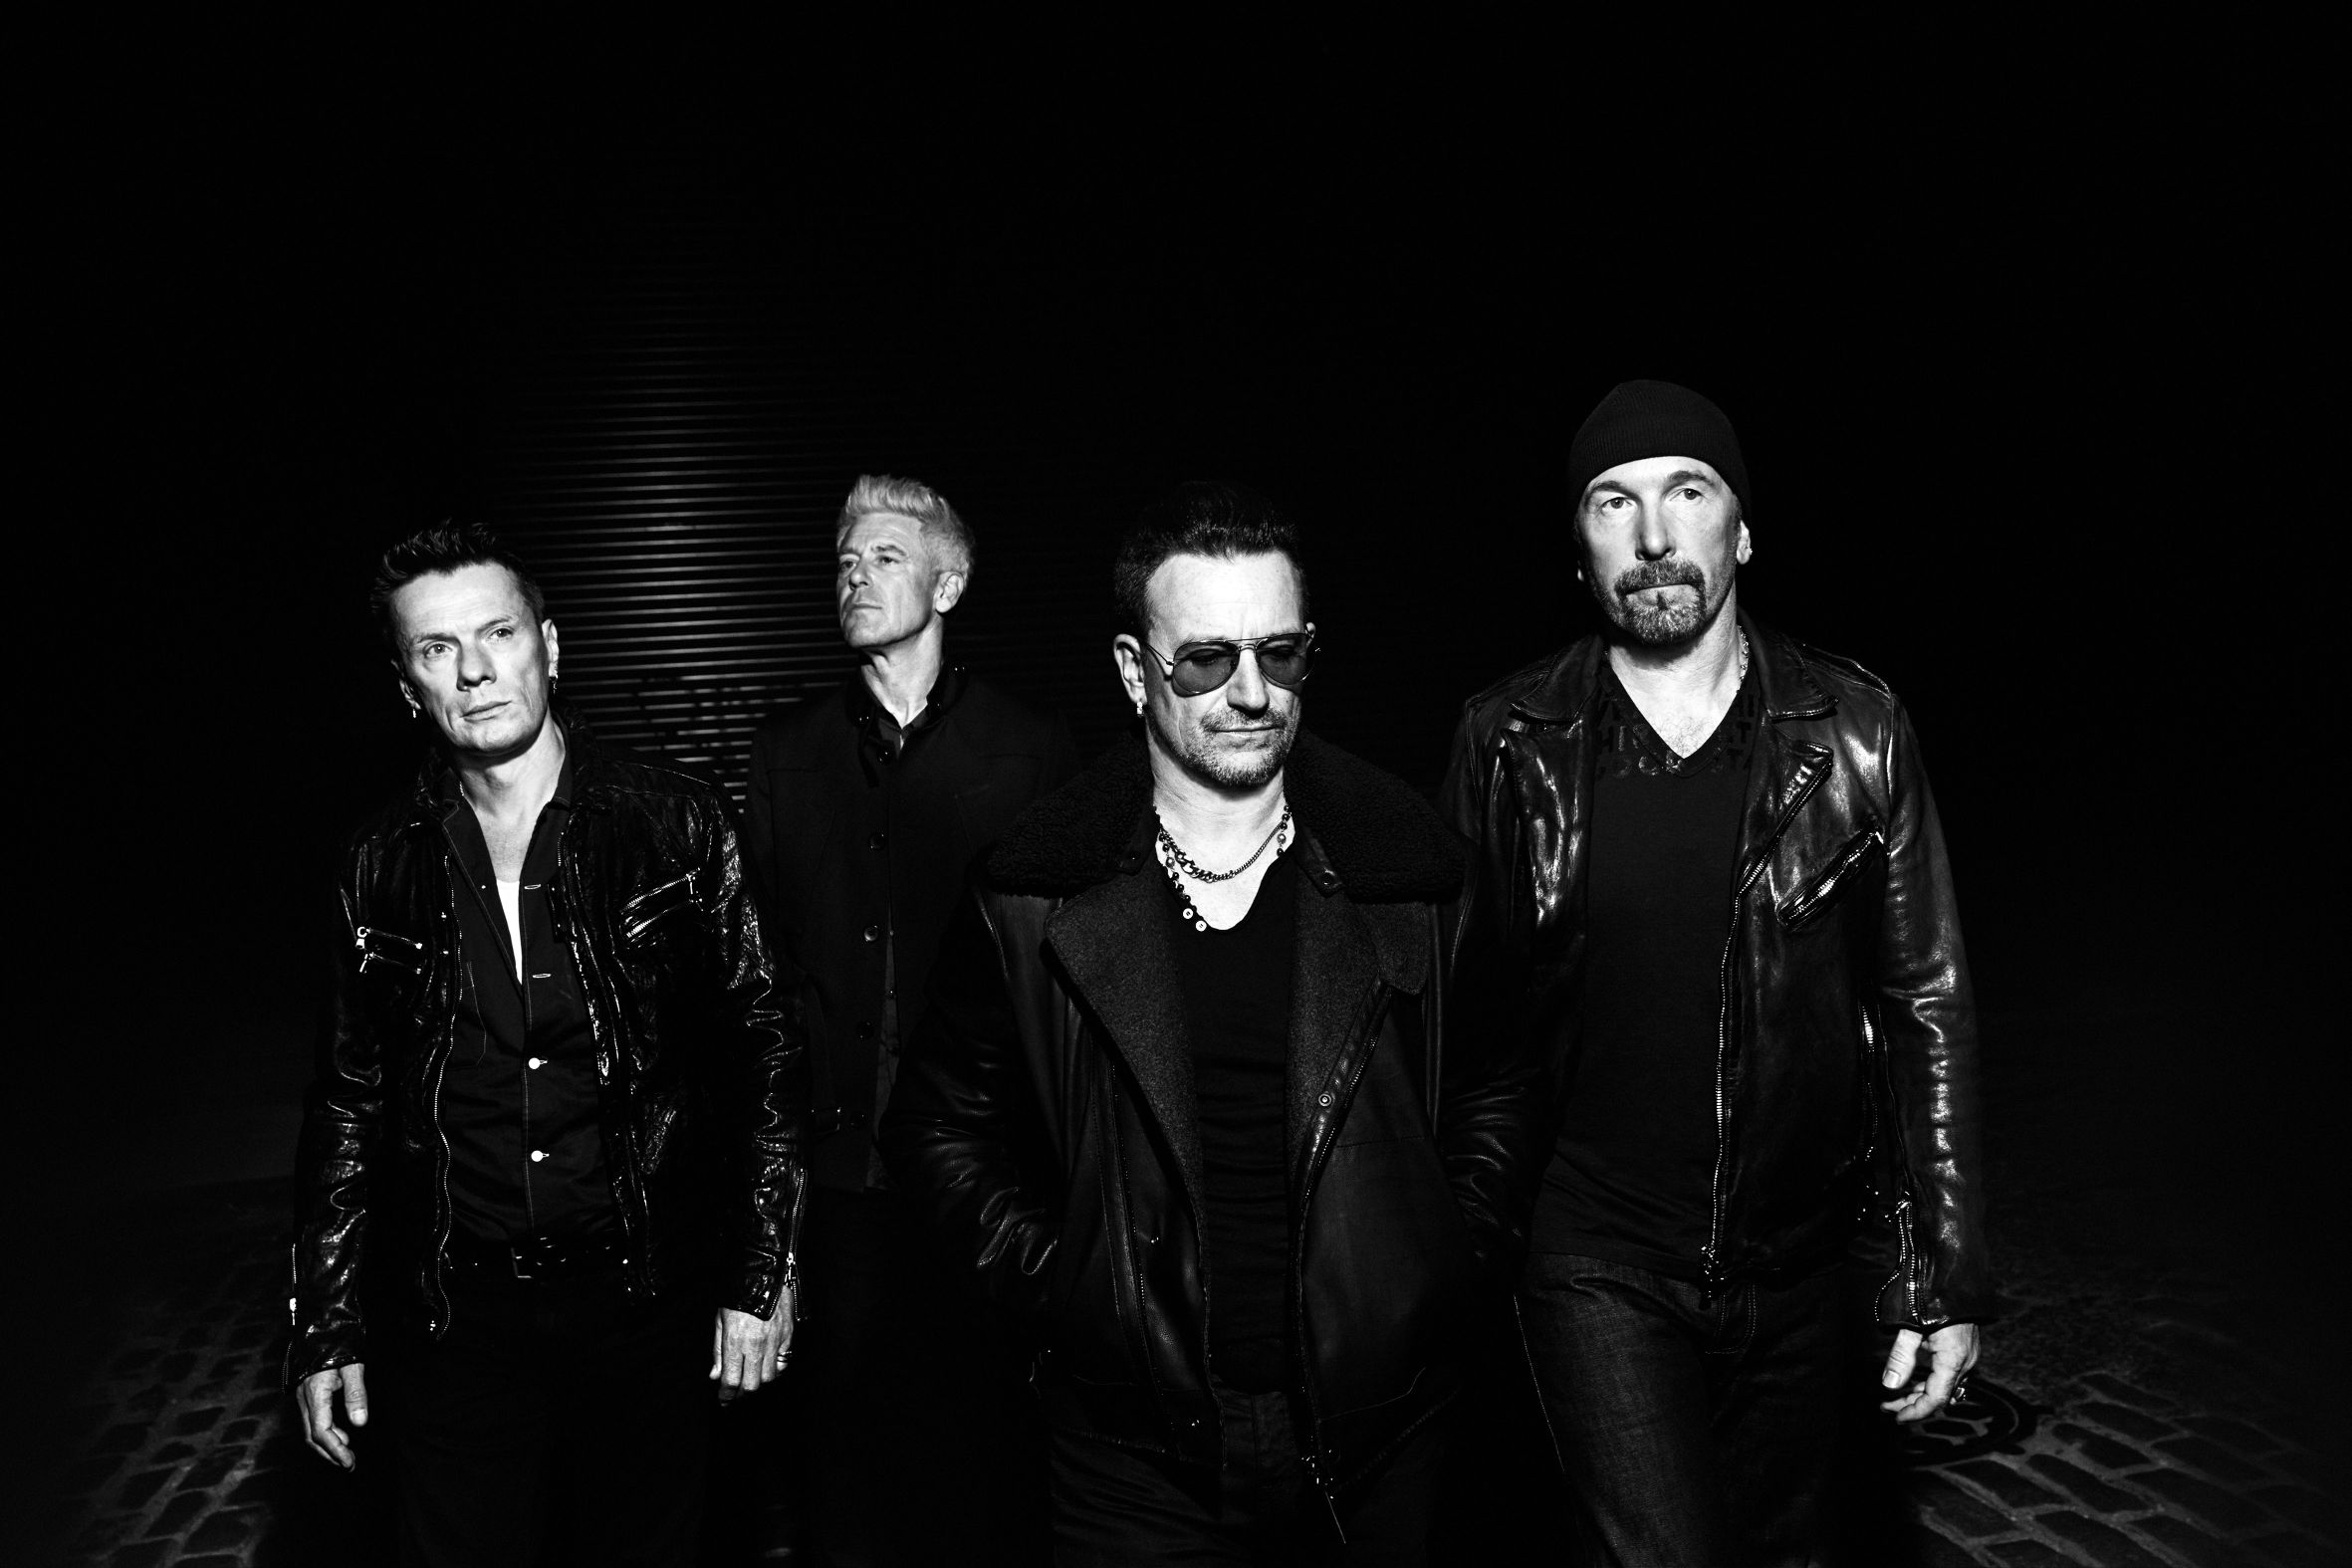  “Songs Of Innocence”, tutto pronto per il nuovo album degli U2